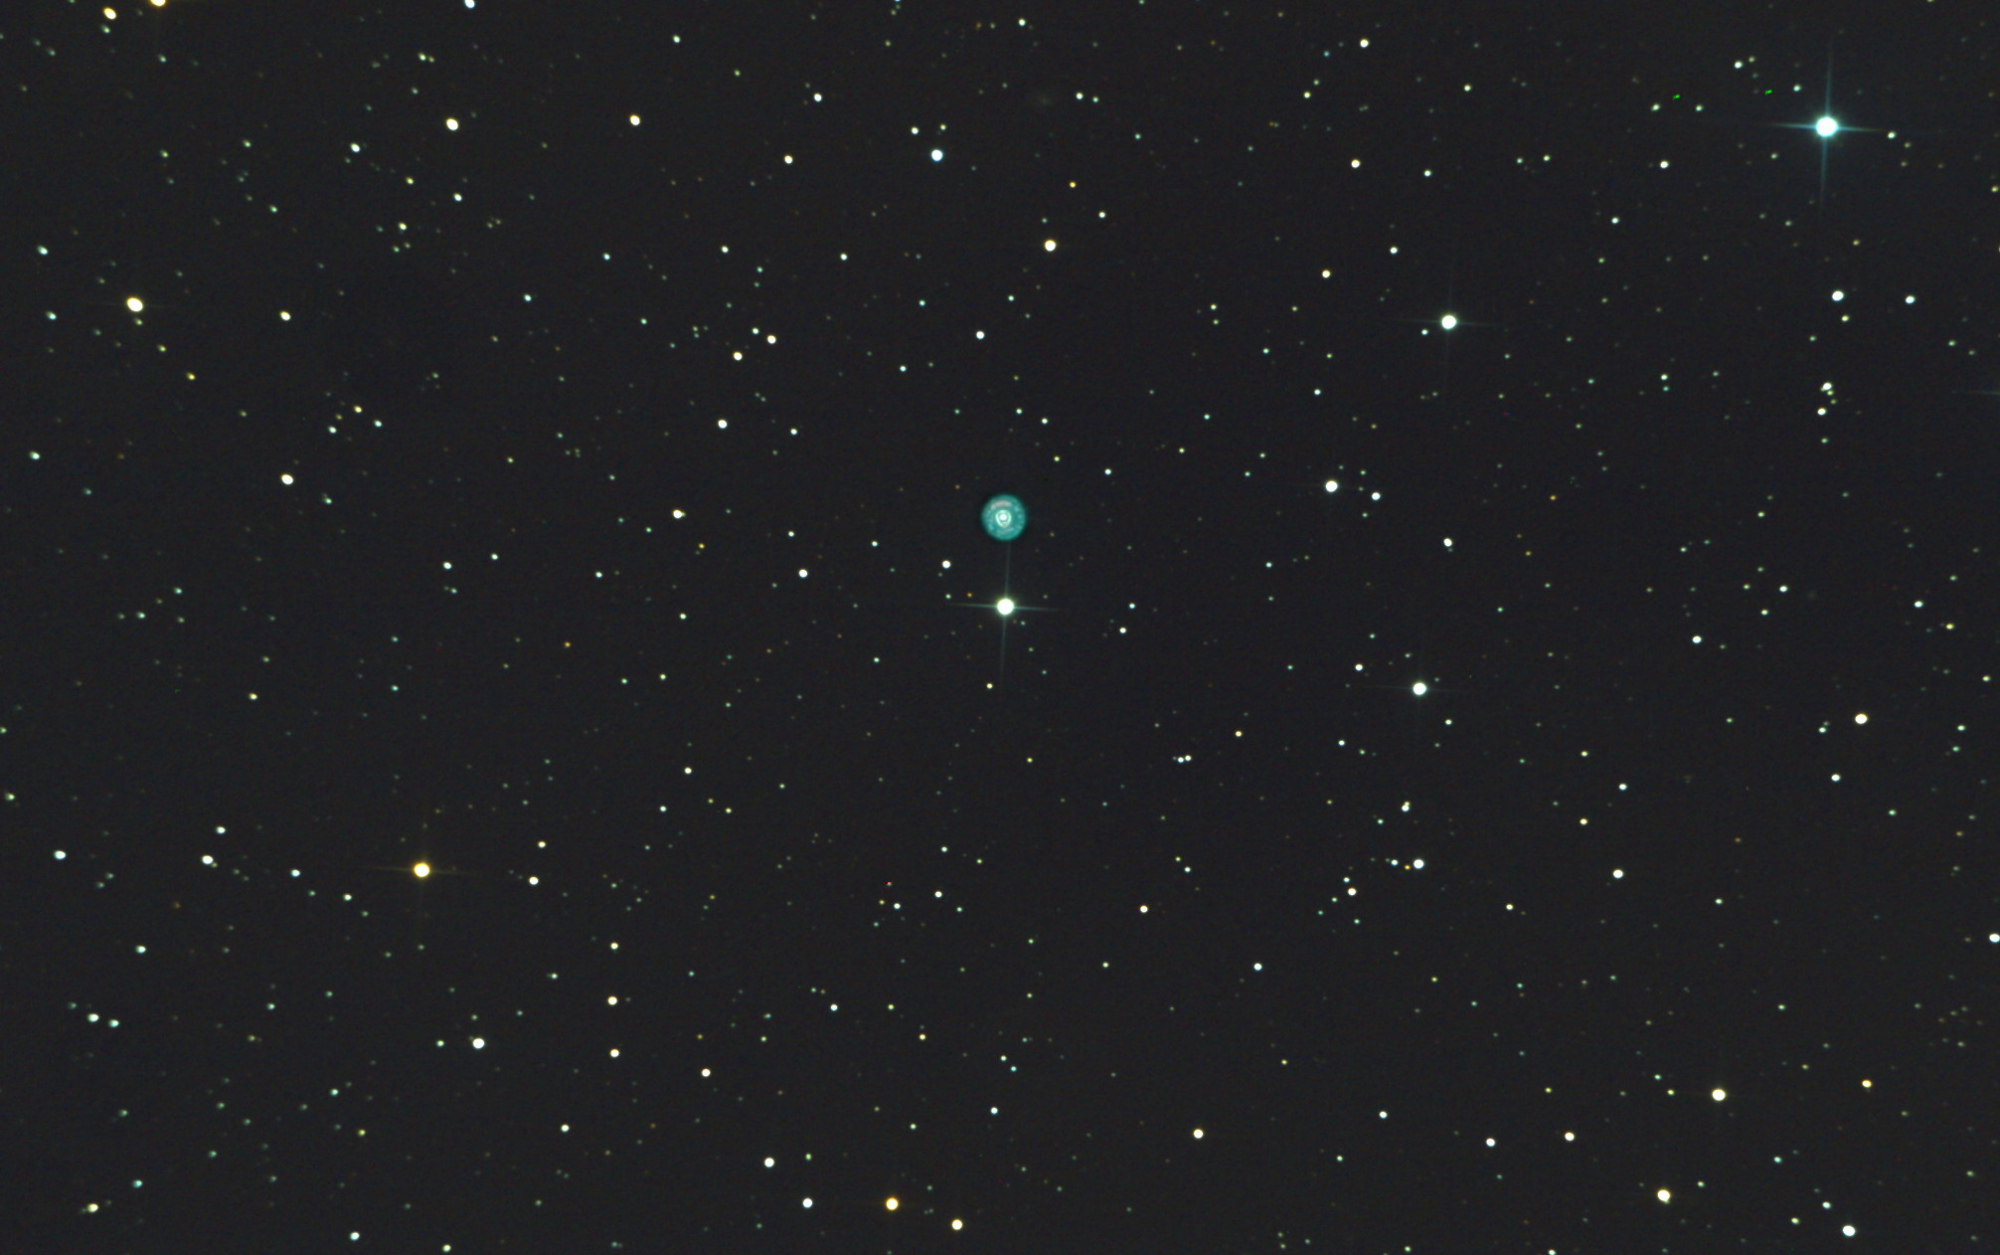 5e0fa6a215a41_NGC2392LPcrp.thumb.jpg.024cc84ec5e8534a9f2c8fa36b494b84.jpg